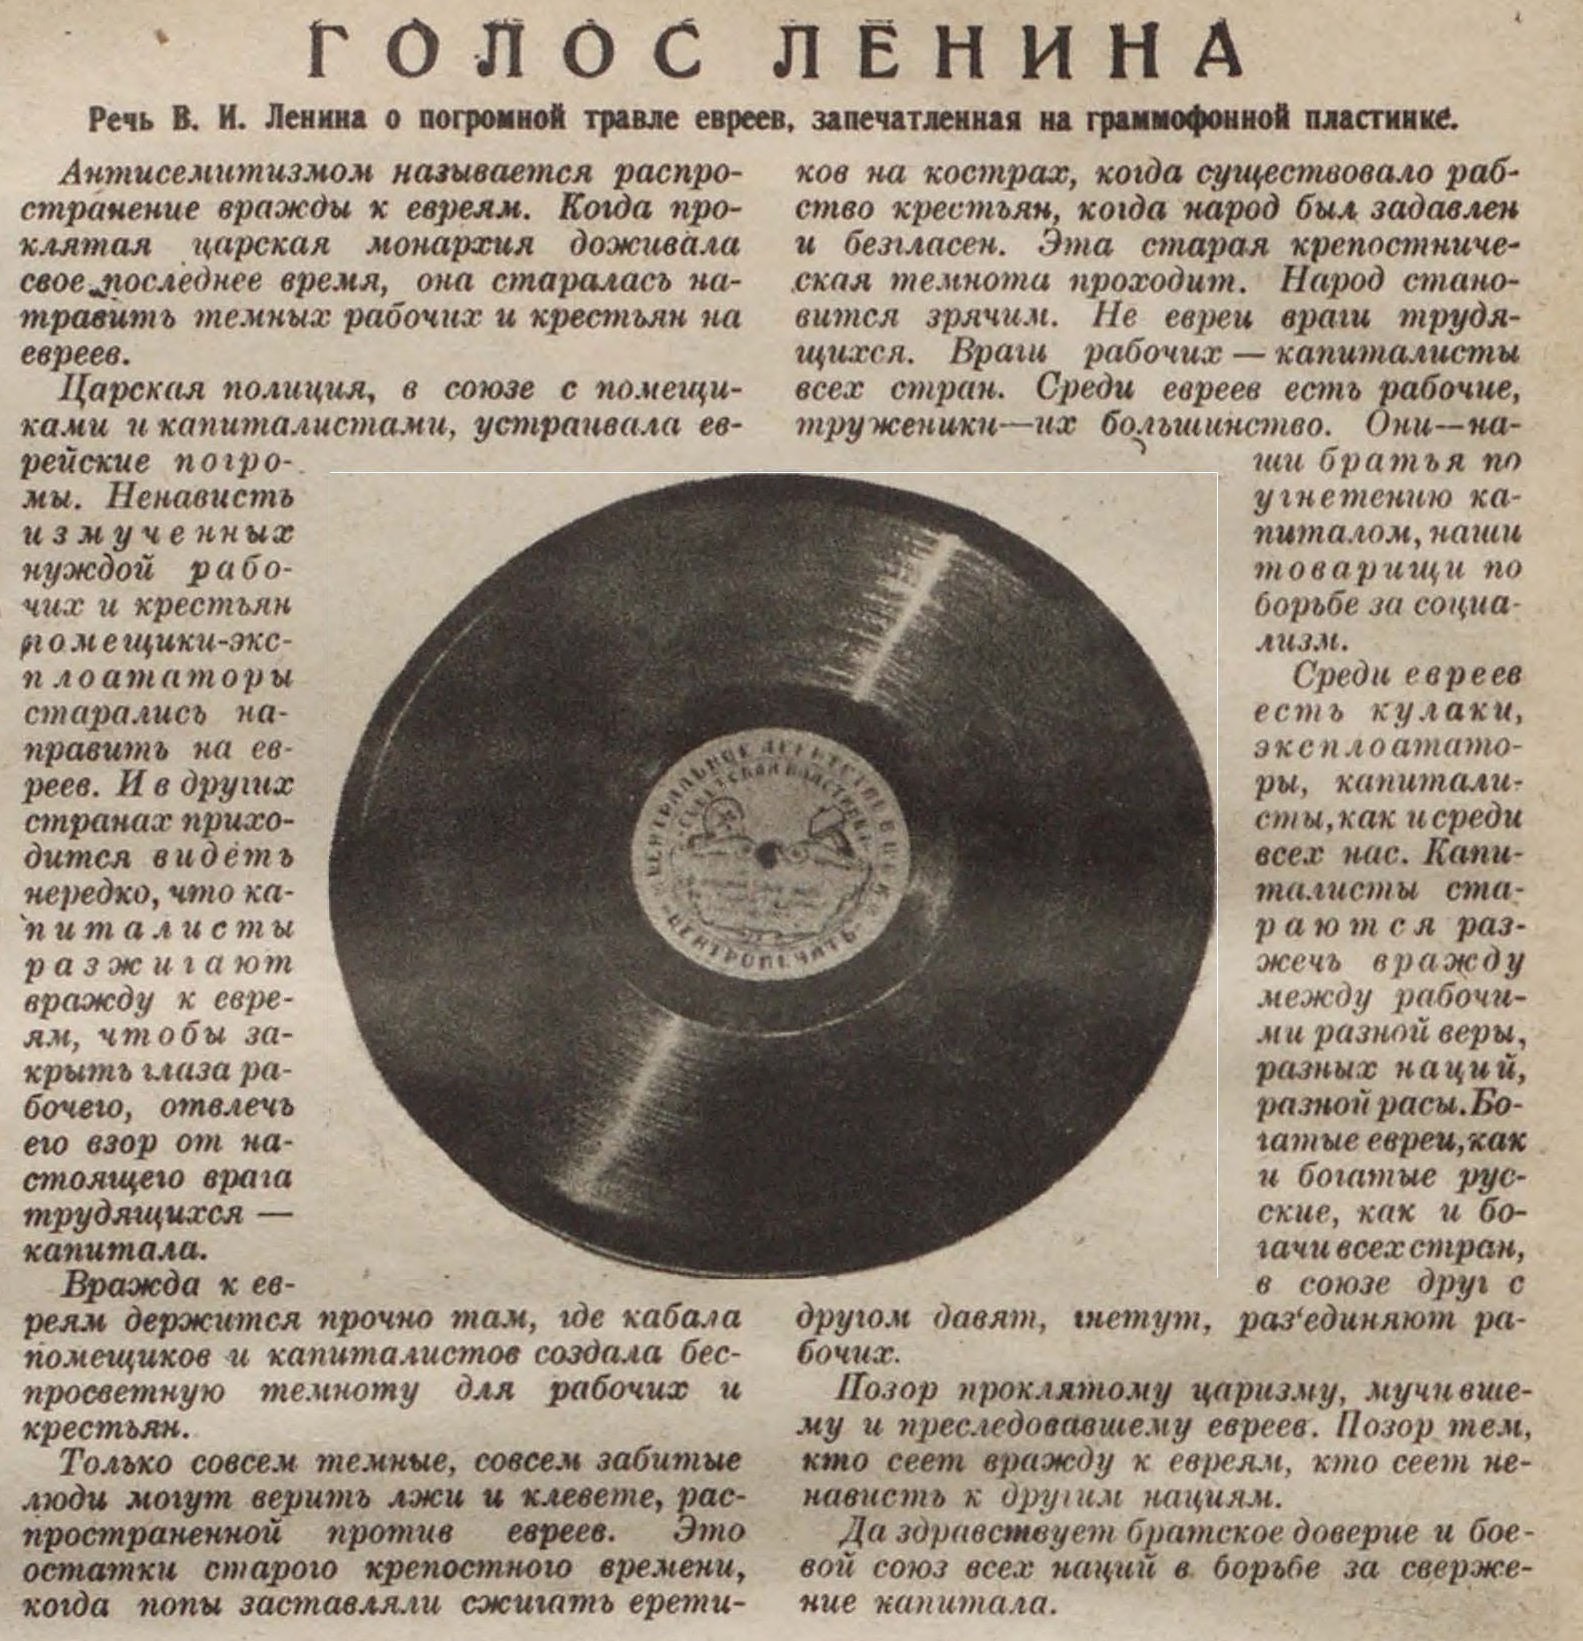 Голос Ленина. Речь В. И. Ленина о погромной травле евреев, запечатленная на граммофонной пластинке.